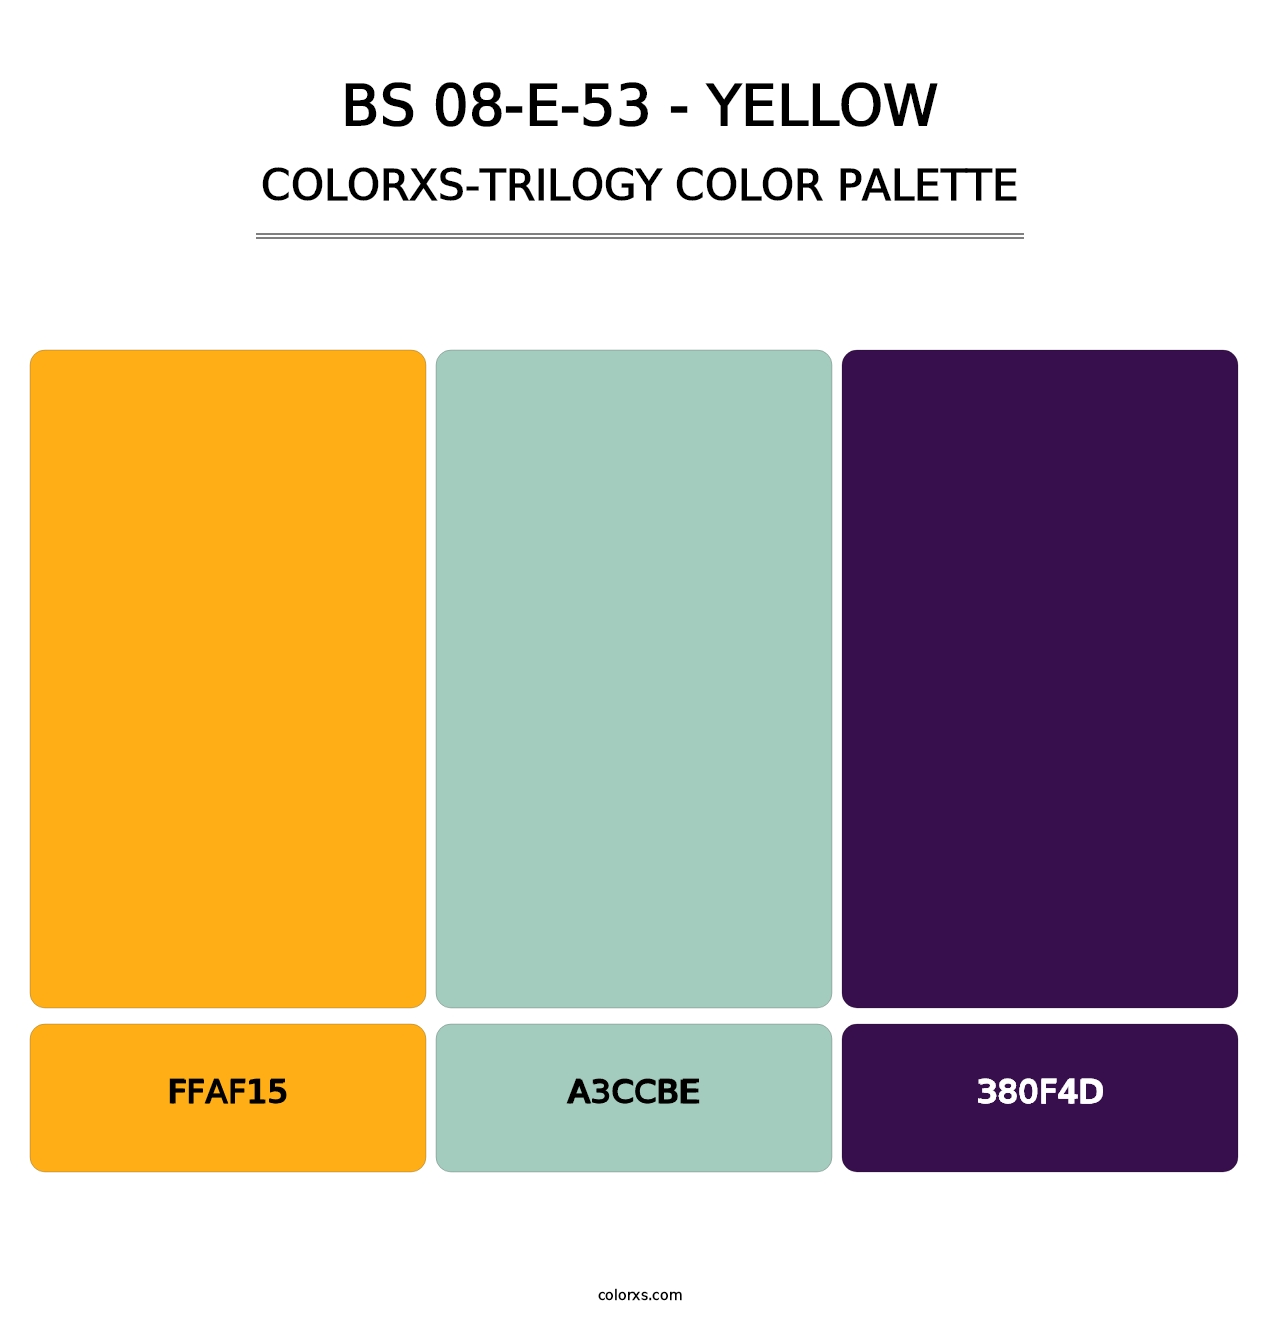 BS 08-E-53 - Yellow - Colorxs Trilogy Palette